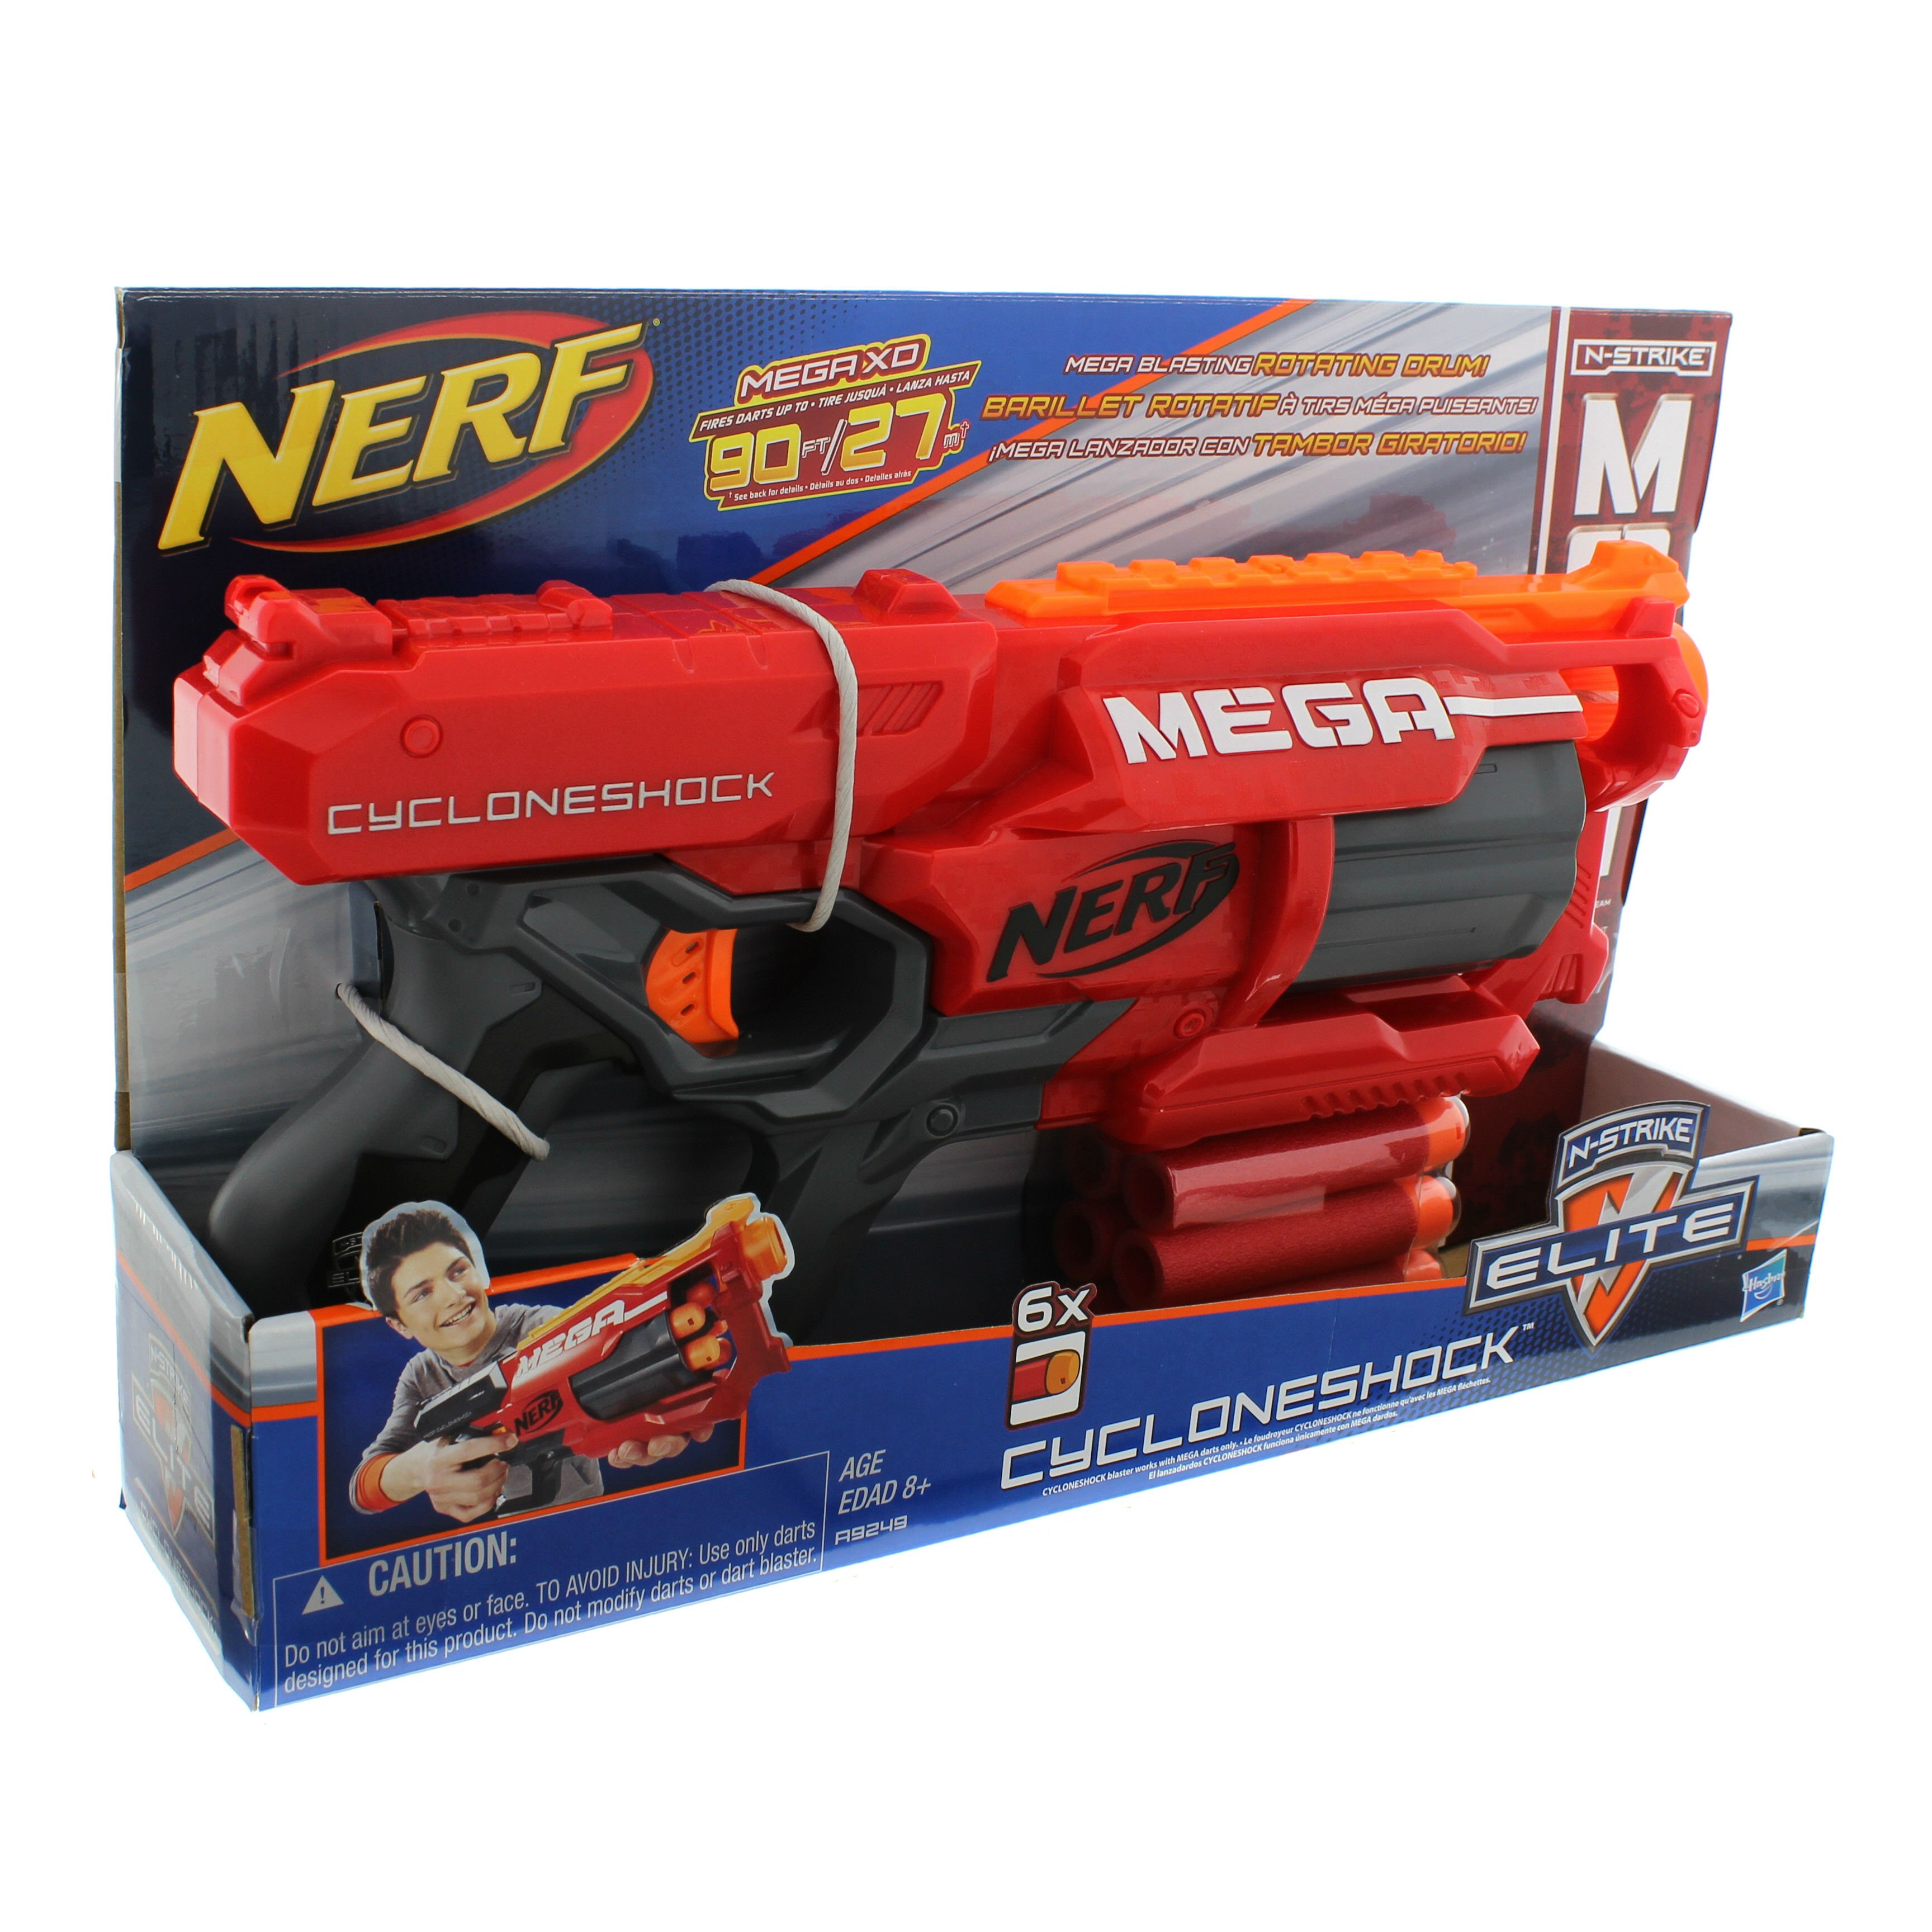 Nerf Nstrike Mega Cyclone Shock - Shop at